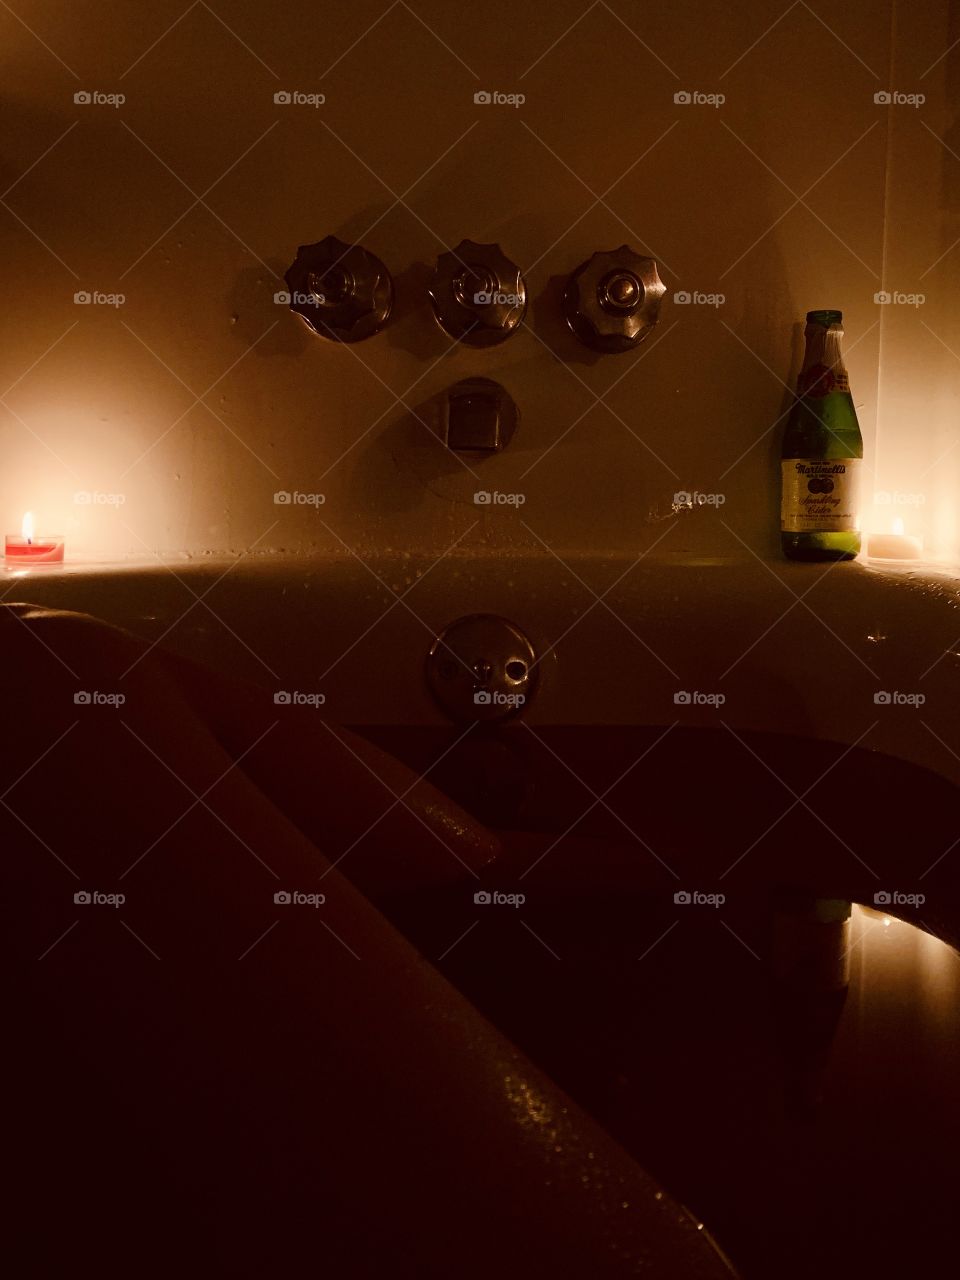 Bathtub bliss. #selflove #sparklingcider #candlelit #bathbomb #soak #romantic